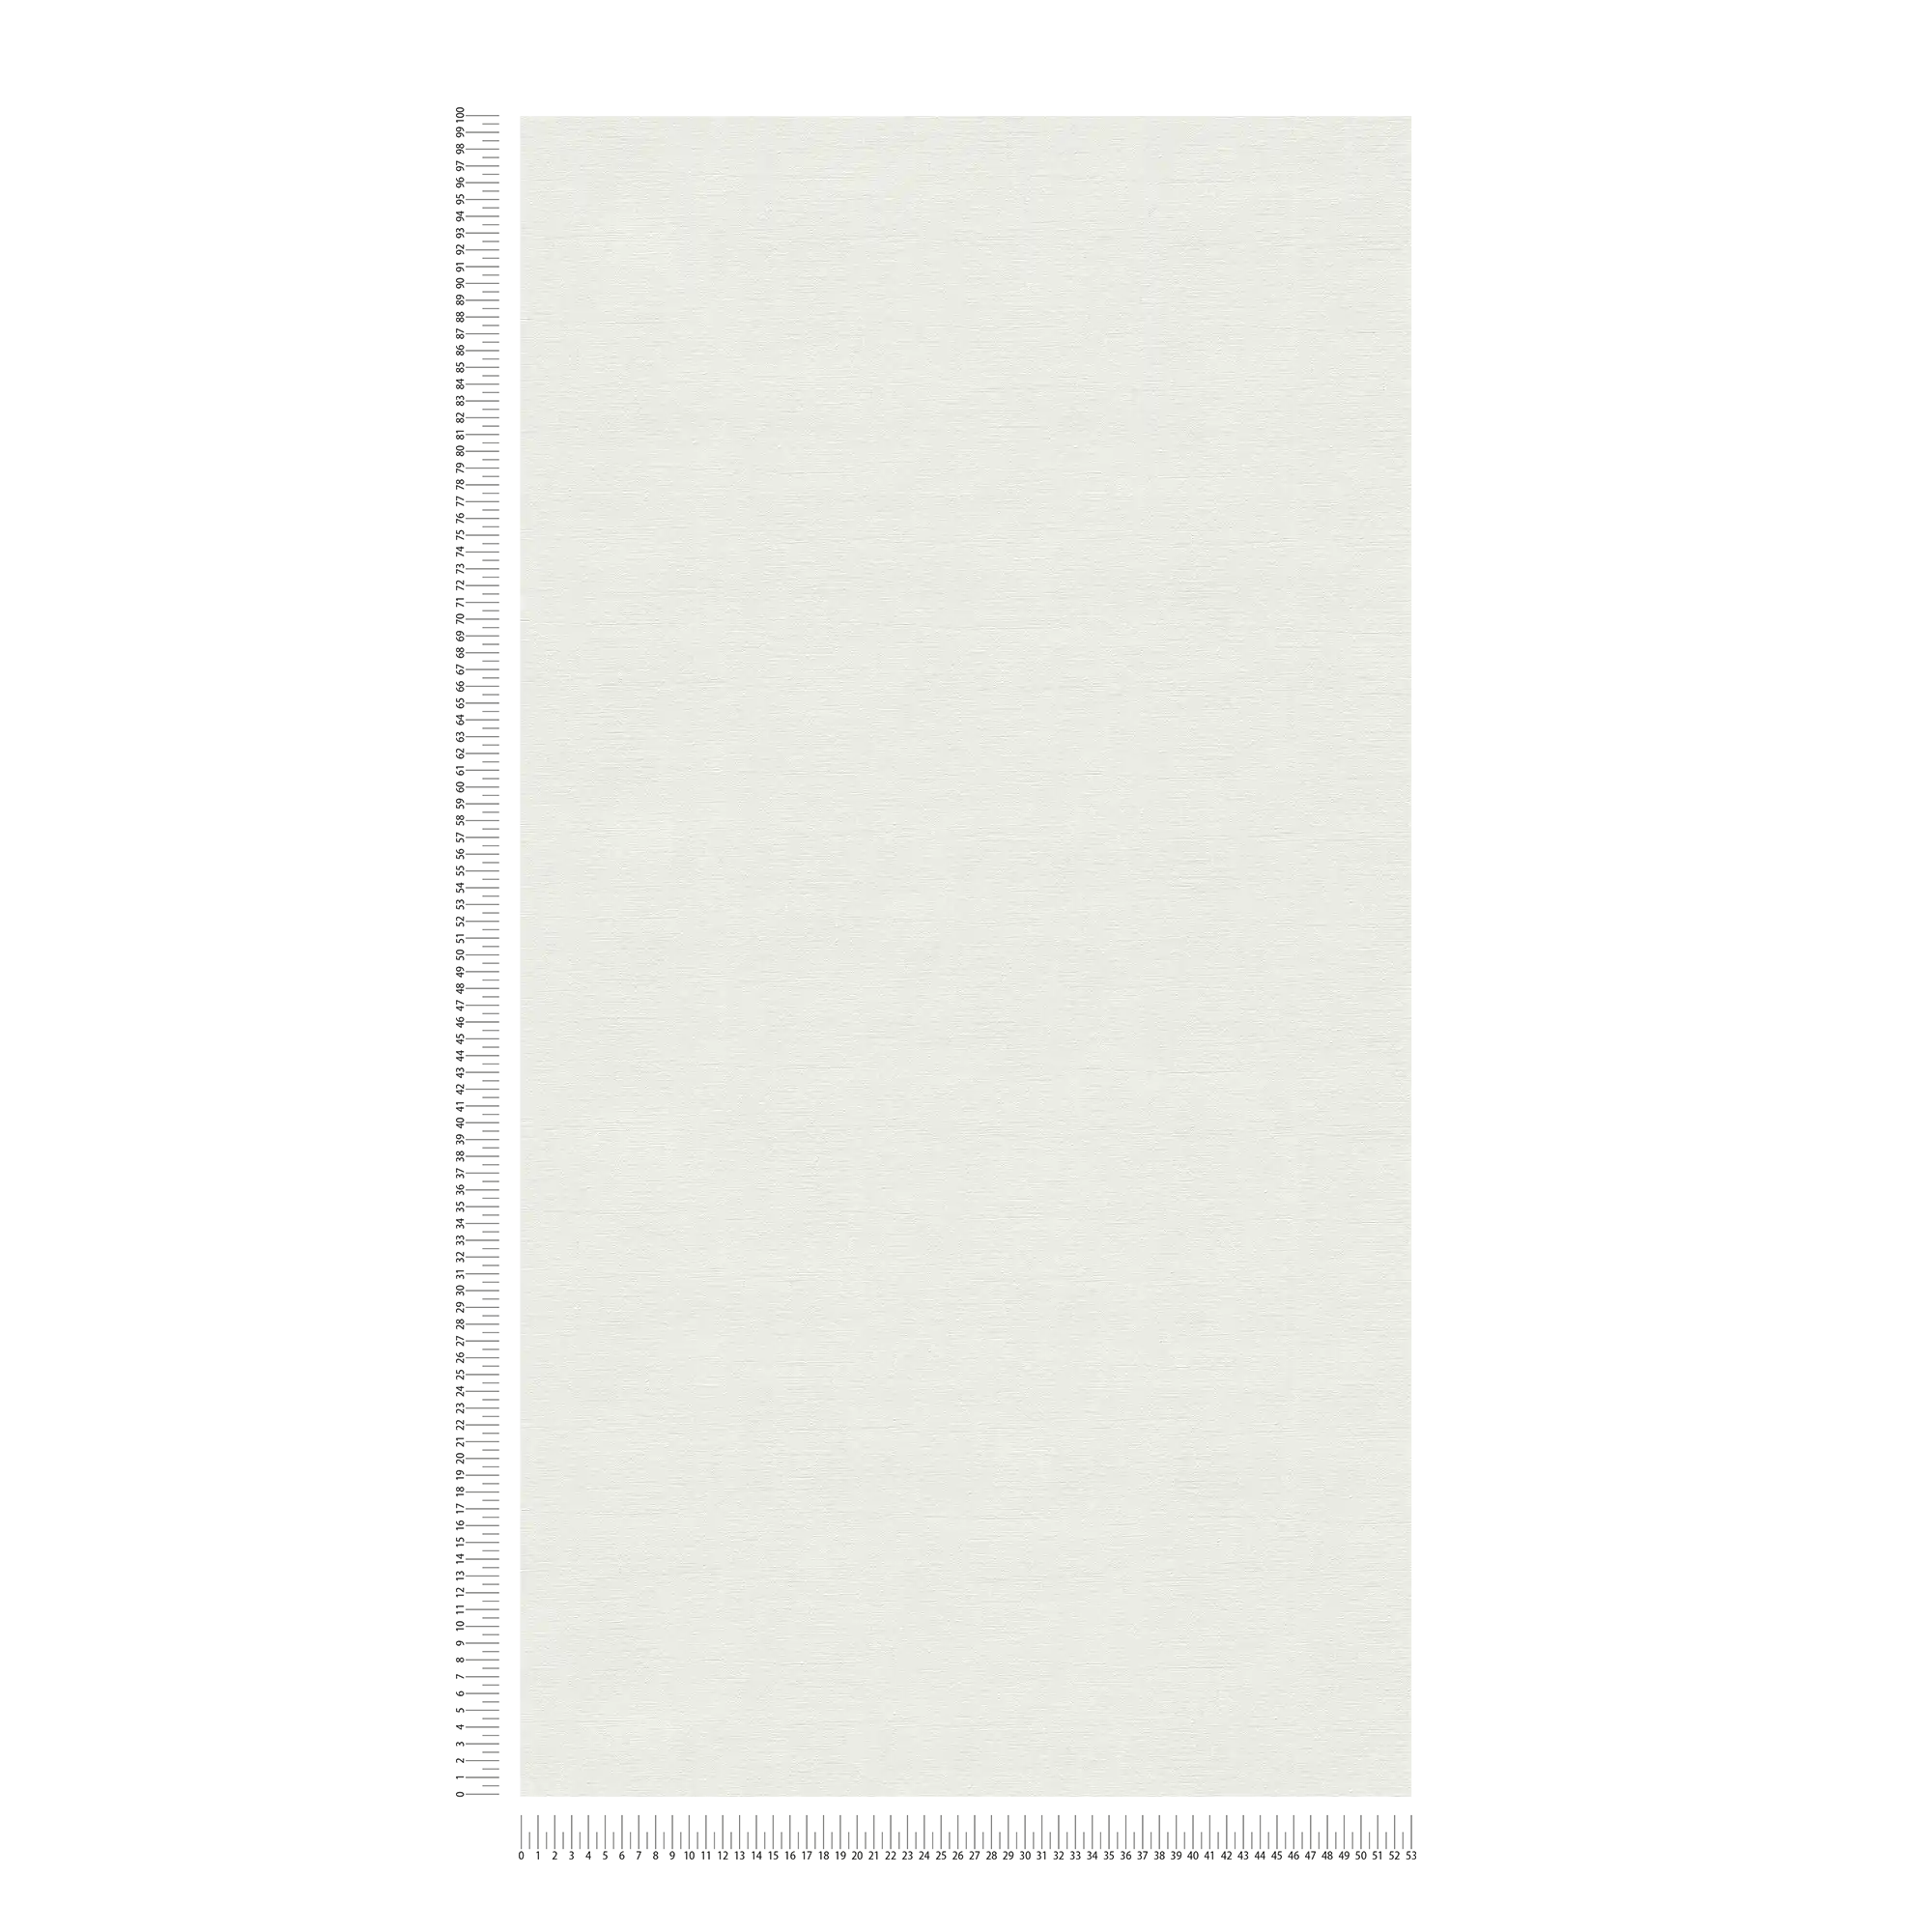             Papier peint intissé à motif finement structuré - gris clair, blanc
        